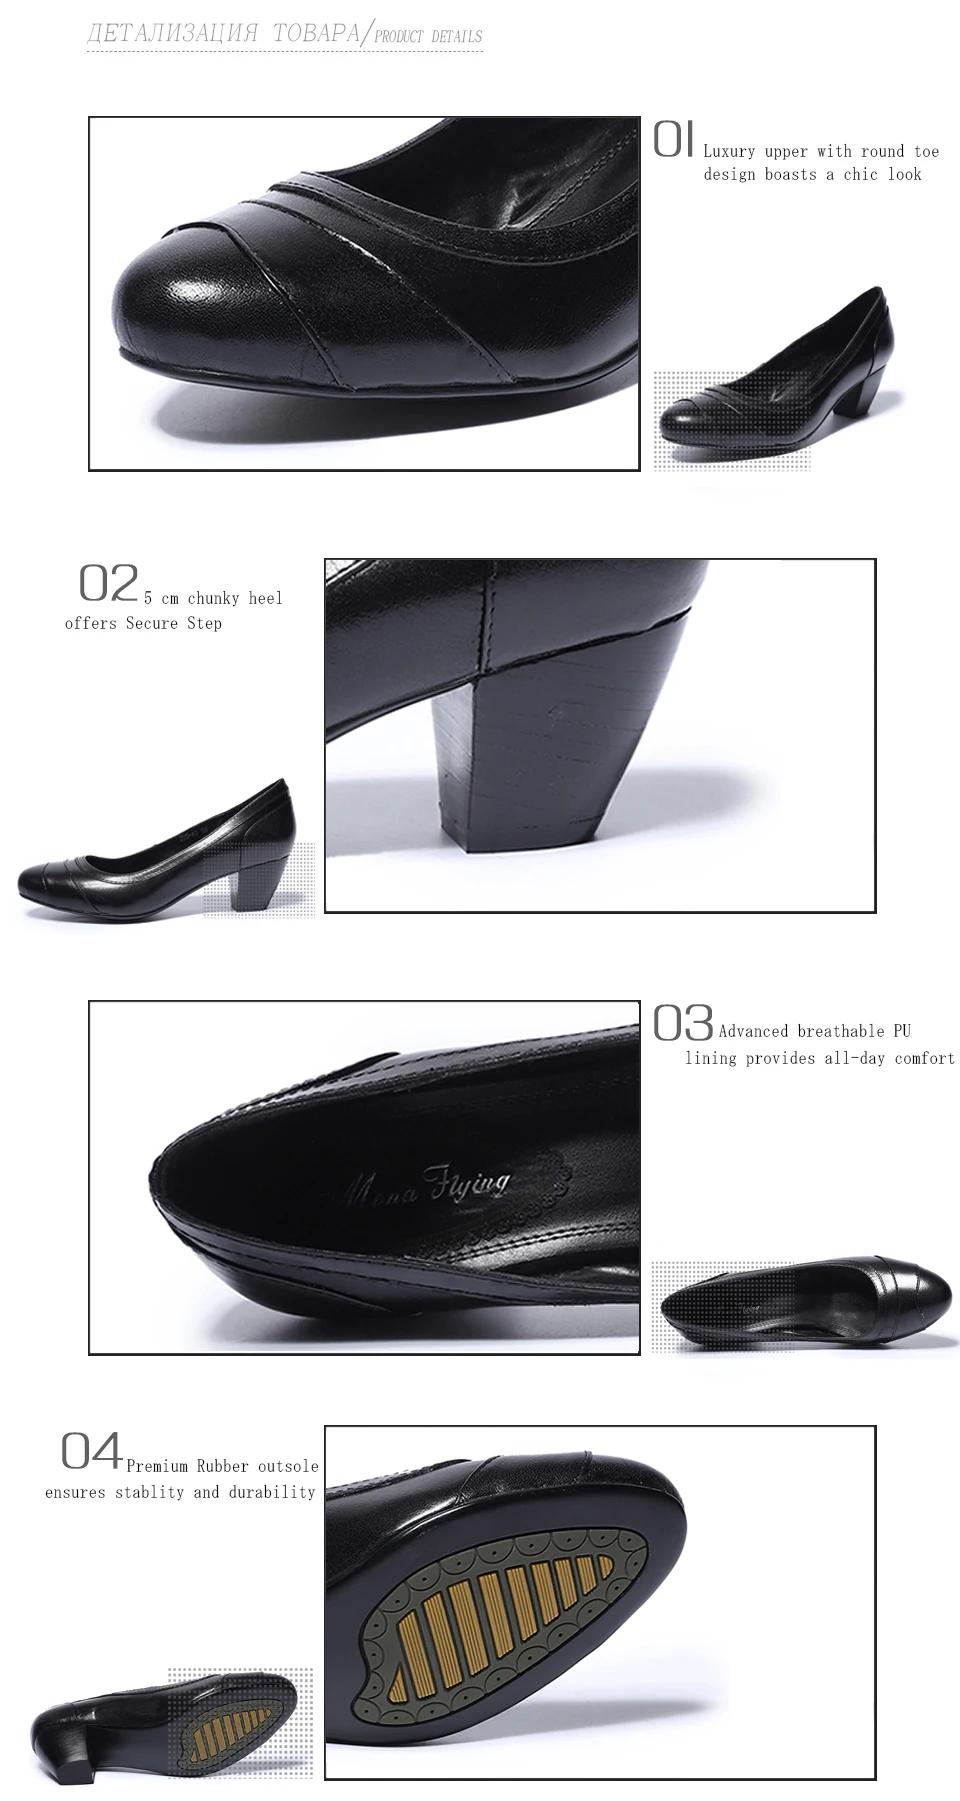 Mona/женские модельные туфли-лодочки из высококачественной кожи ручной работы, с круглым носком, без шнуровки, на высоком каблуке, женская обувь, 205-A3LH